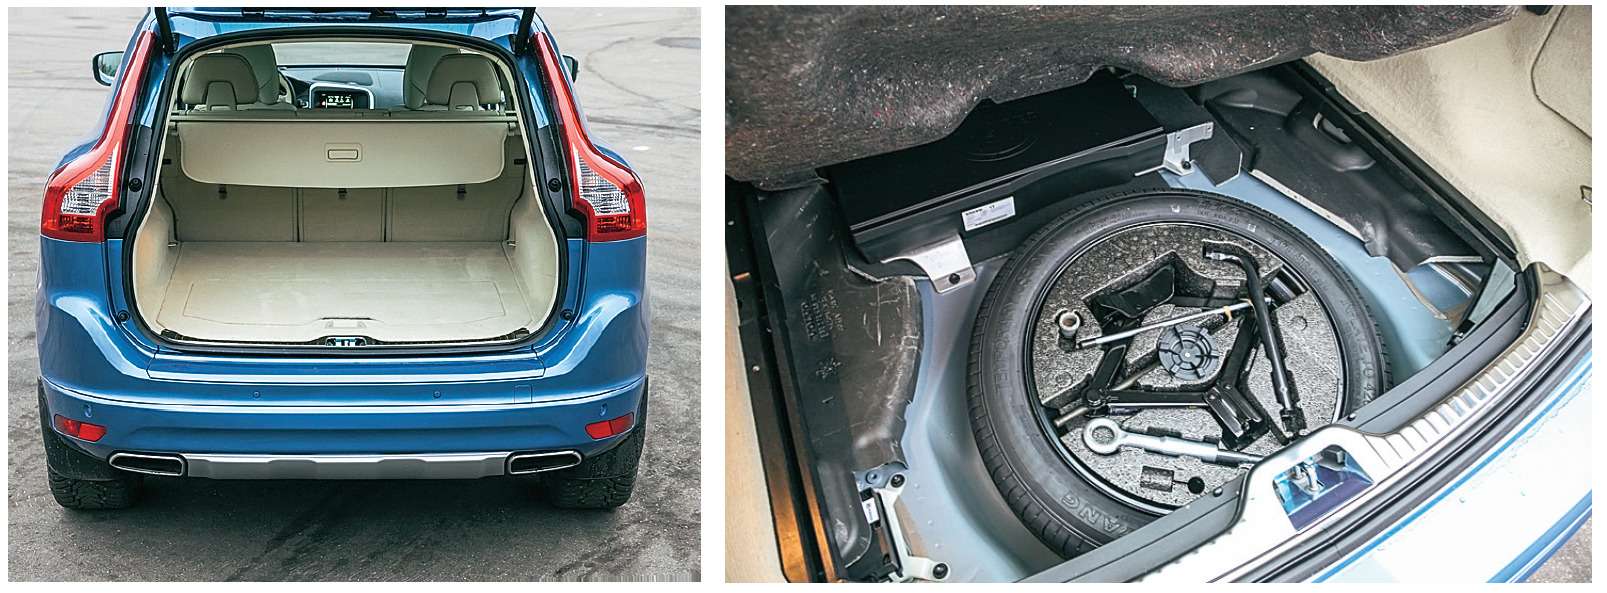 Багажник XC60 – это 420 реальных литров объема, полученных нами в результате замеров. Под полом – докатка и инструмент.